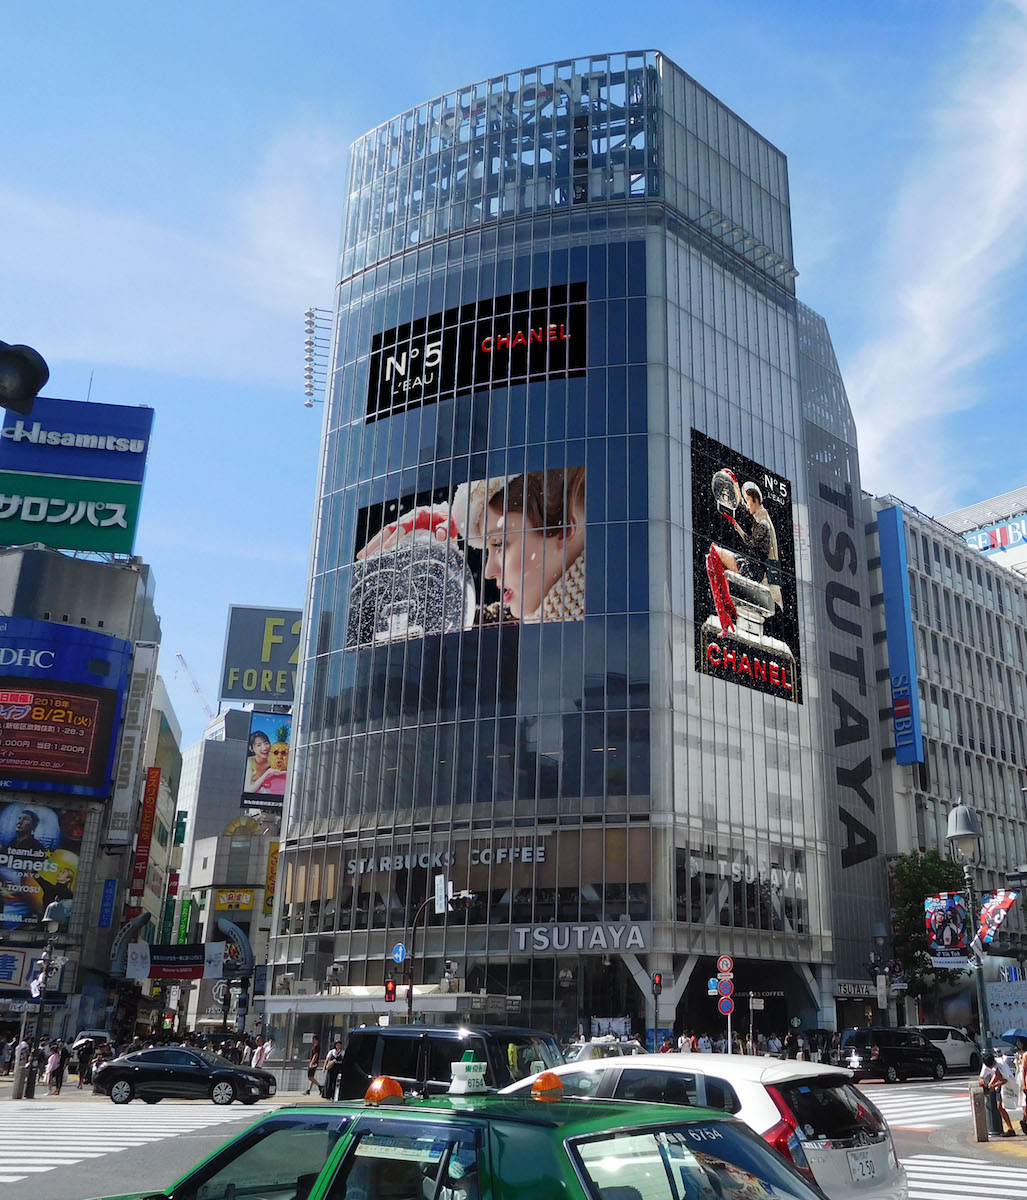 「シャネル」のスノードームが渋谷に出現！ホリデーキャンペーンを実施 - WWDJAPAN